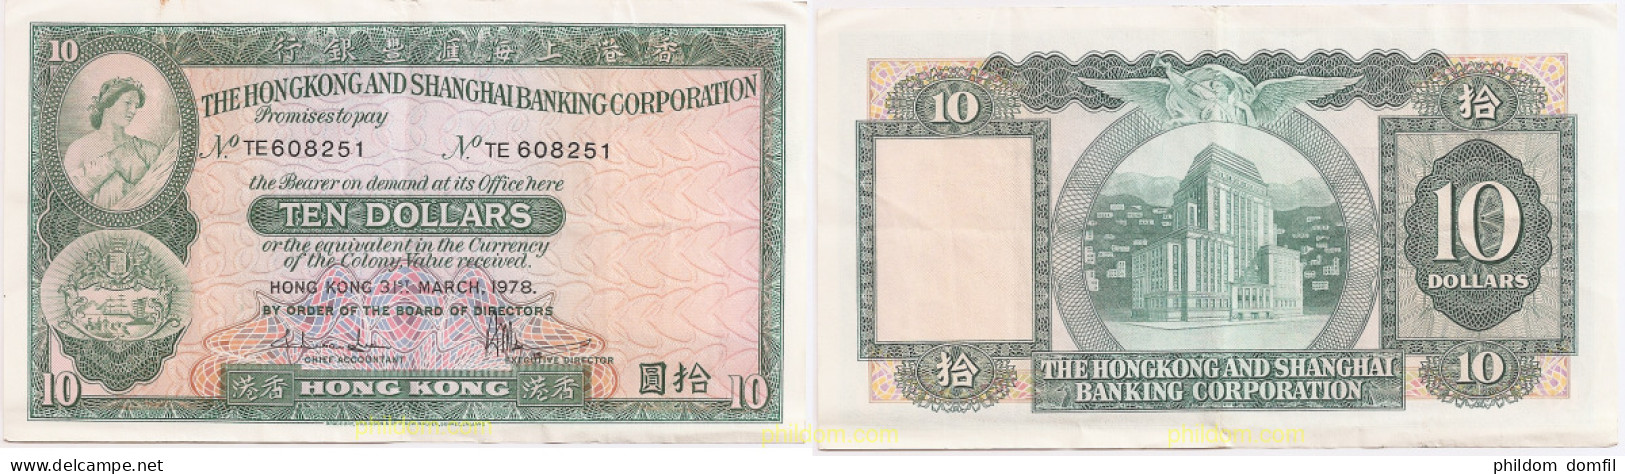 493 HONG KONG 1978 10 $ HONGKONG AND SHANGHAI BANKING CORPORATION - Hong Kong